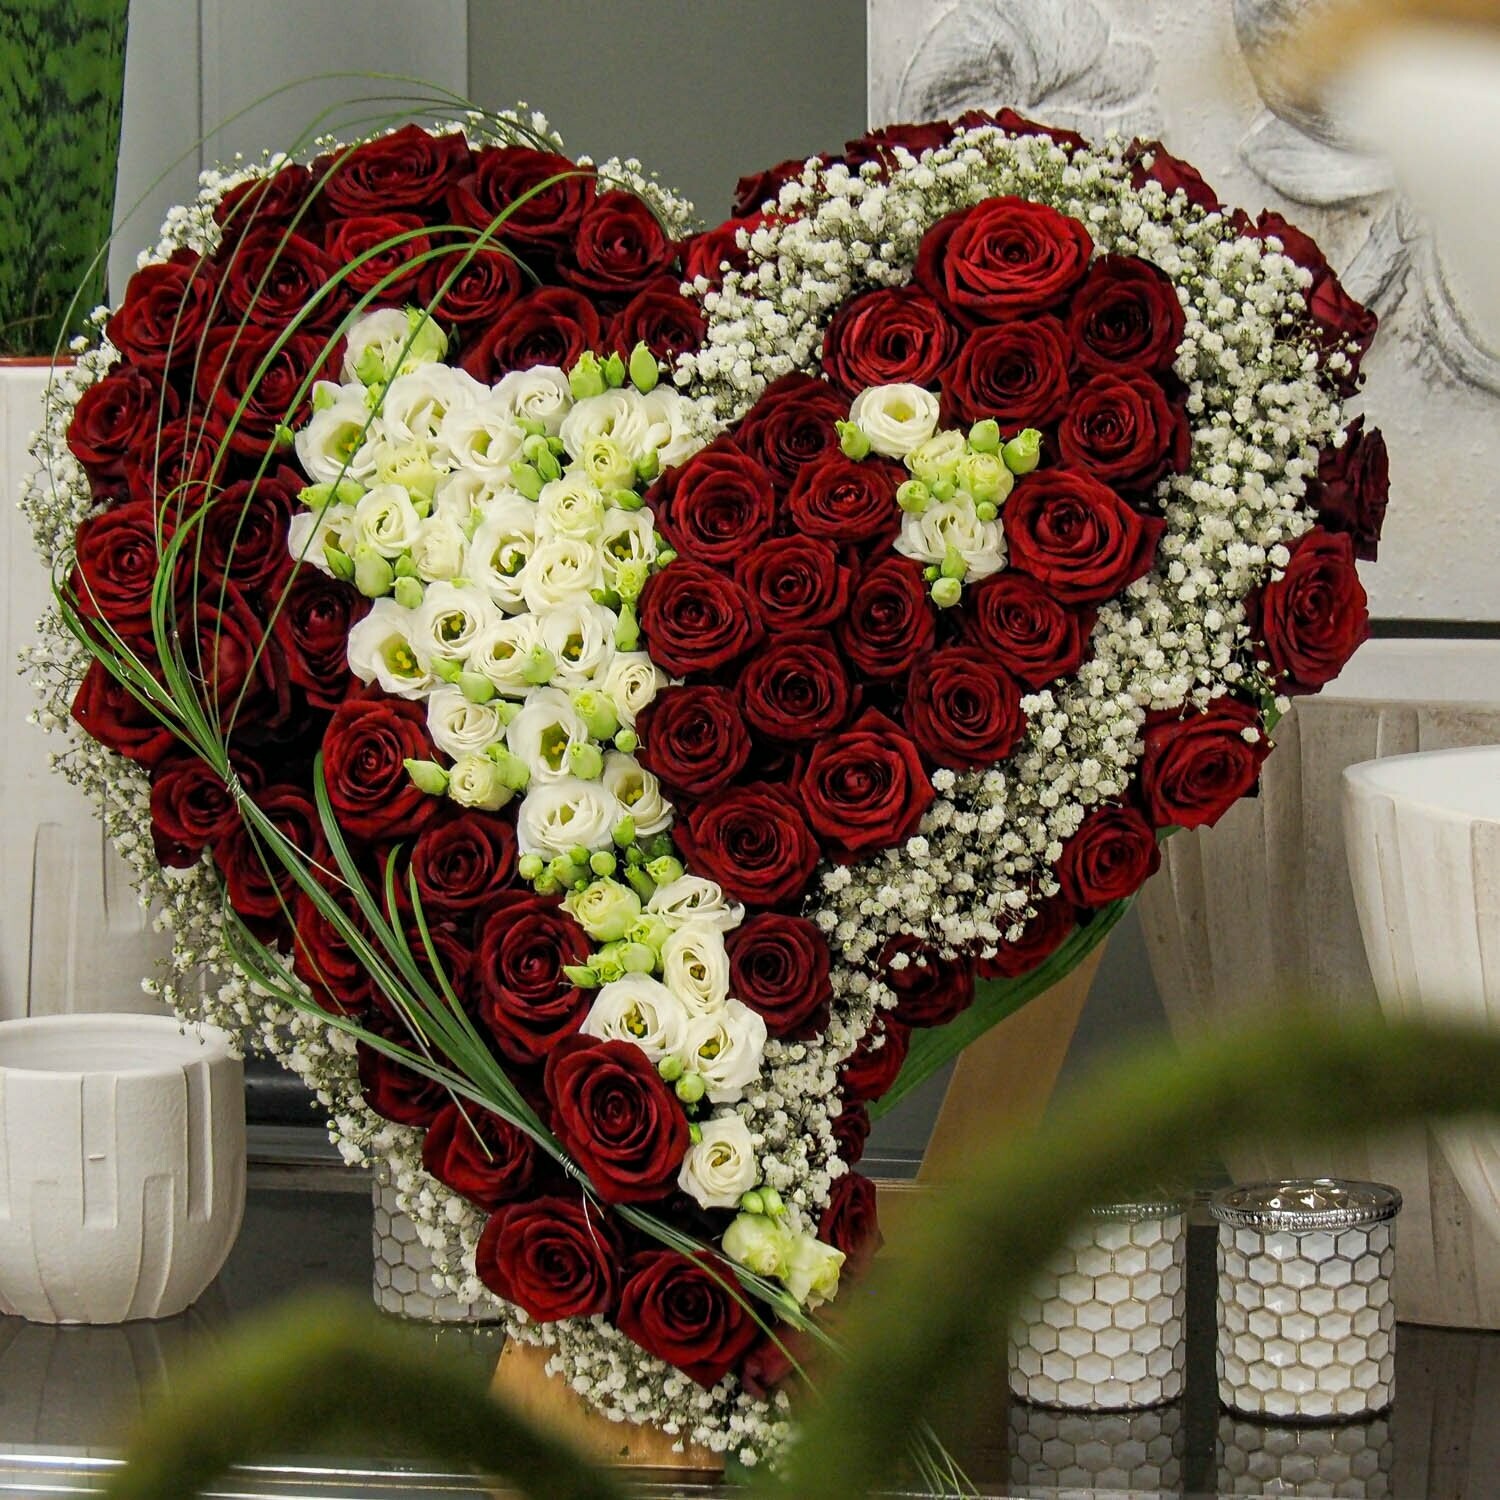 Trauer-Herz, strukturiert mit roten Rosen und weiß, geschlossen, ca. 70 cm